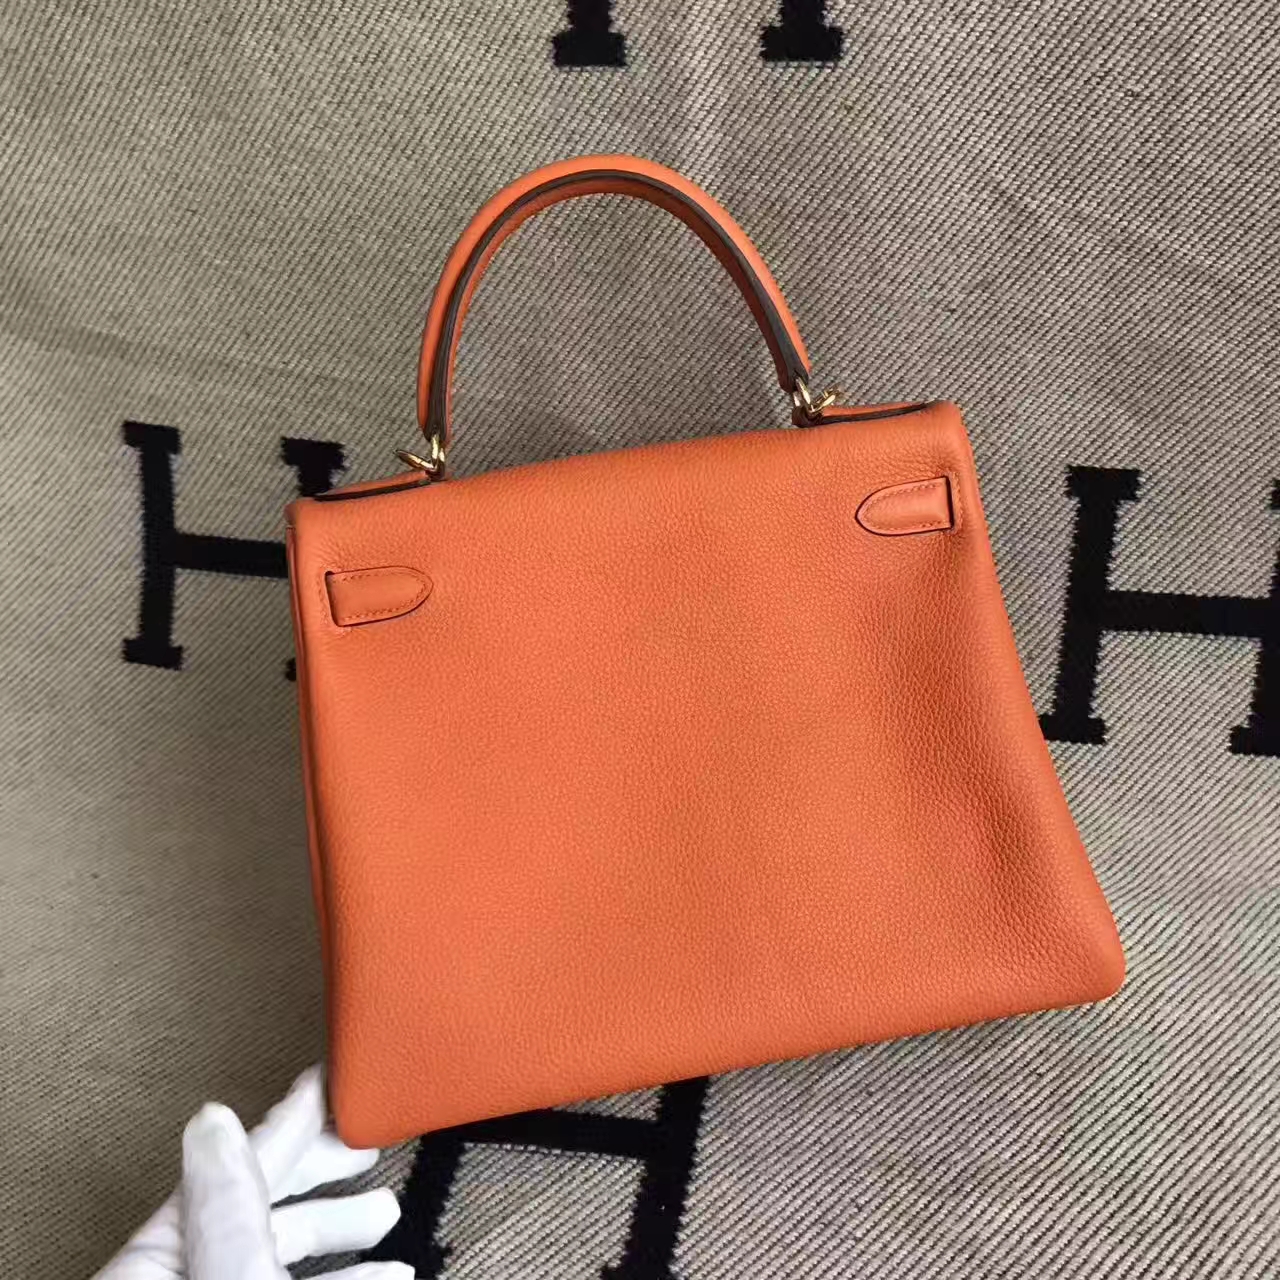 Discount Hermes 93 Orange Togo Calfskin Leather Retourne Kelly Bag 28CM